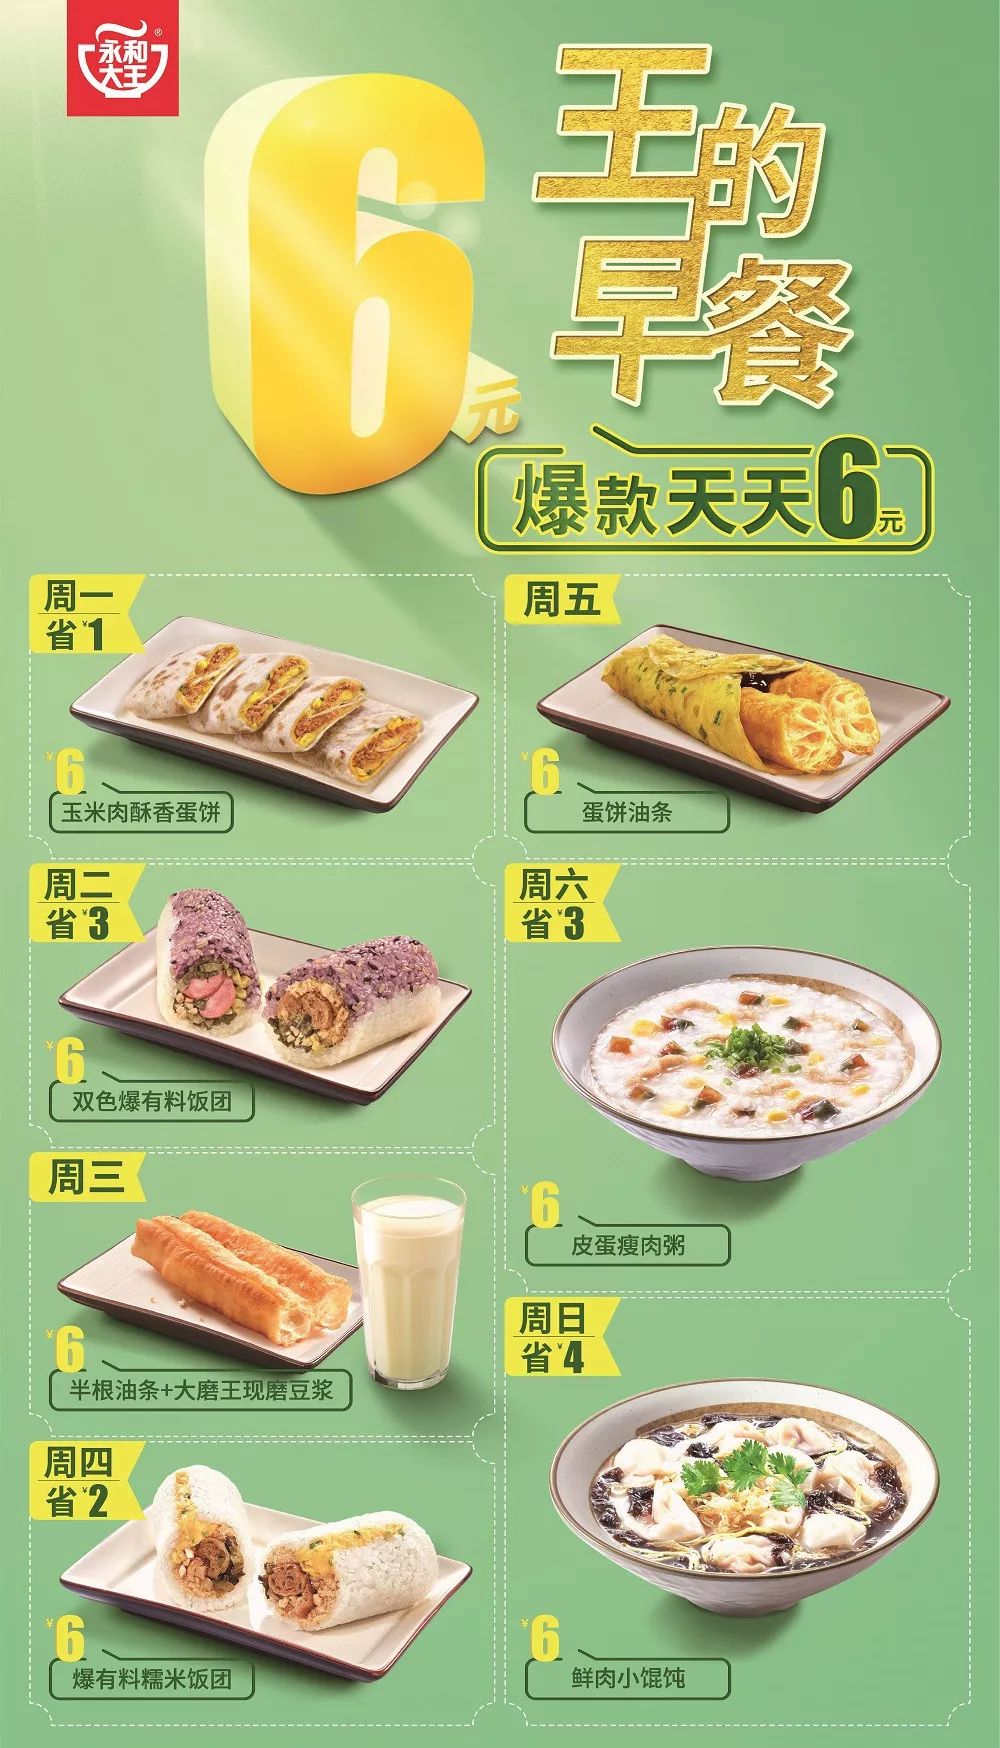 "胃"暖中国,永和大王最高立减10元!_早餐